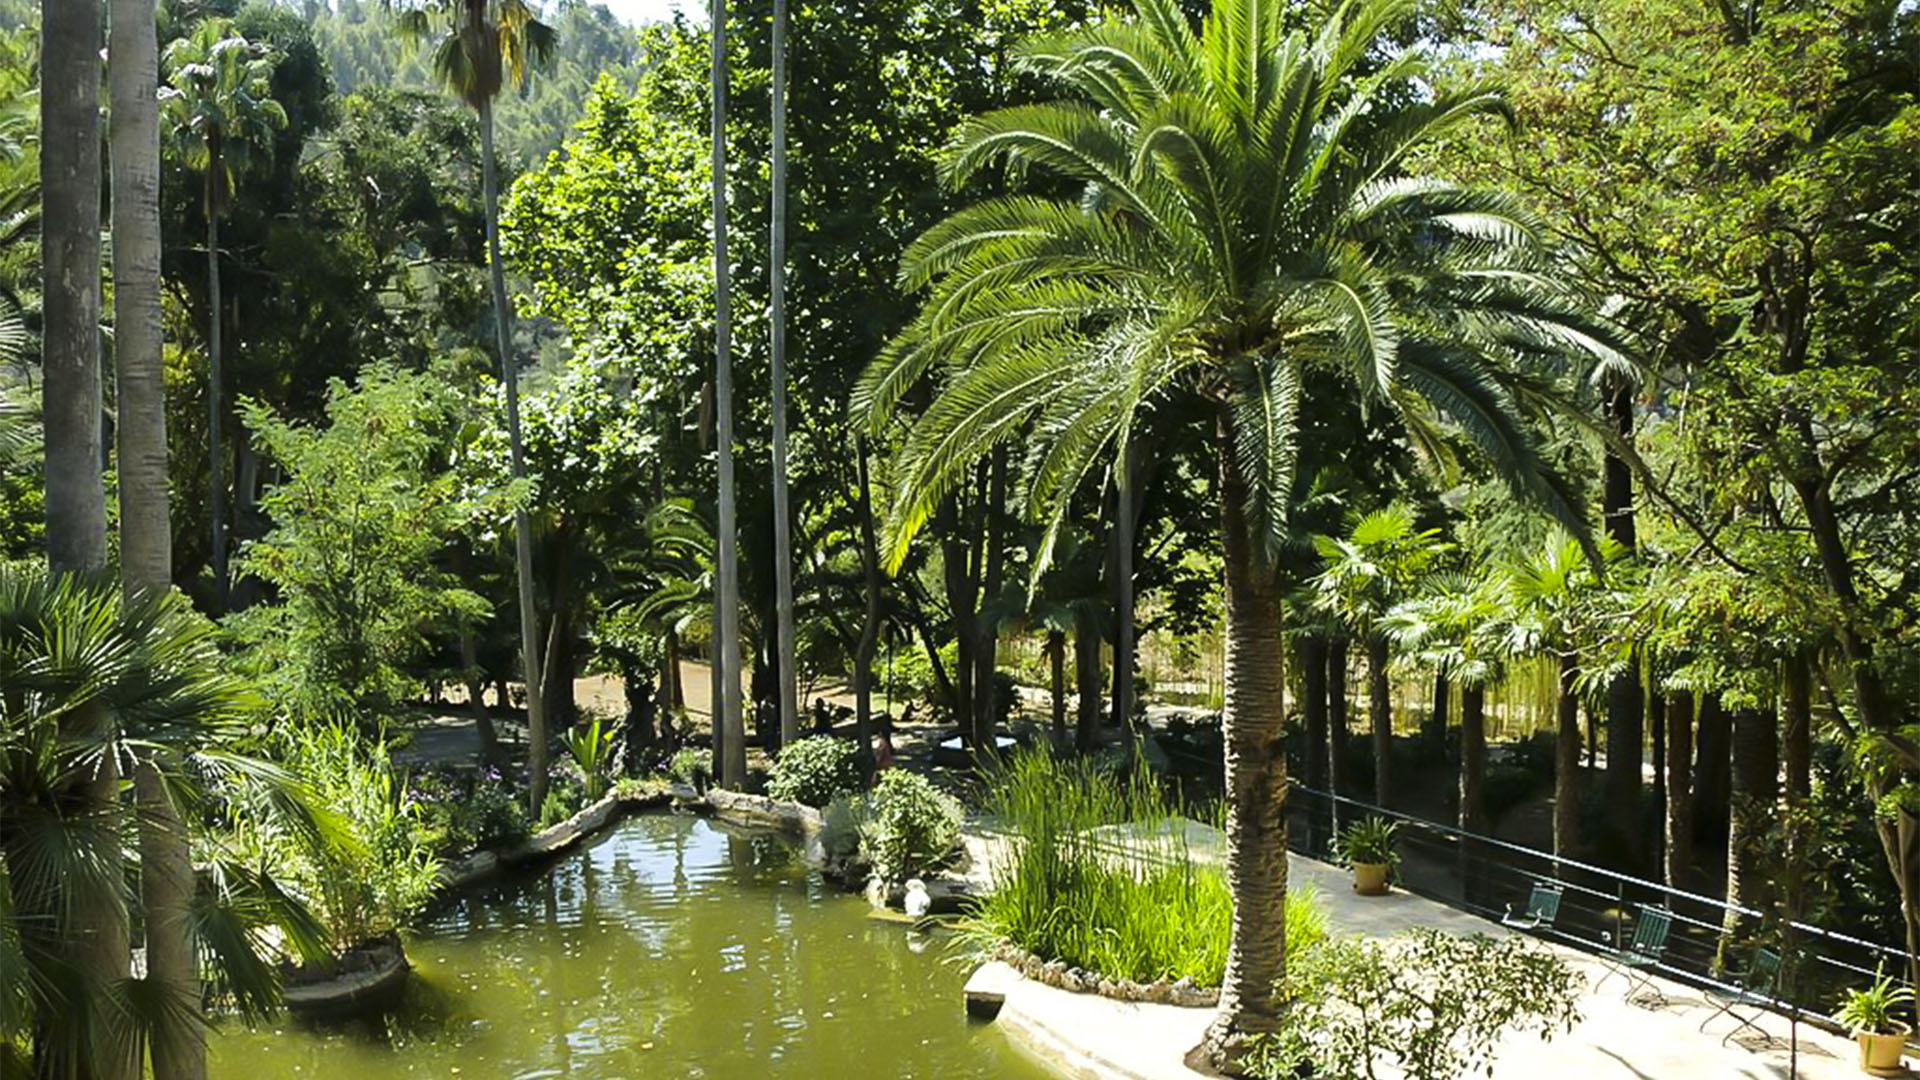 Die Mauren hinterliessen ihre Spuren auf Mallorca. Ein Idyll der Botanischer Garten Jardines de Alfàbia.